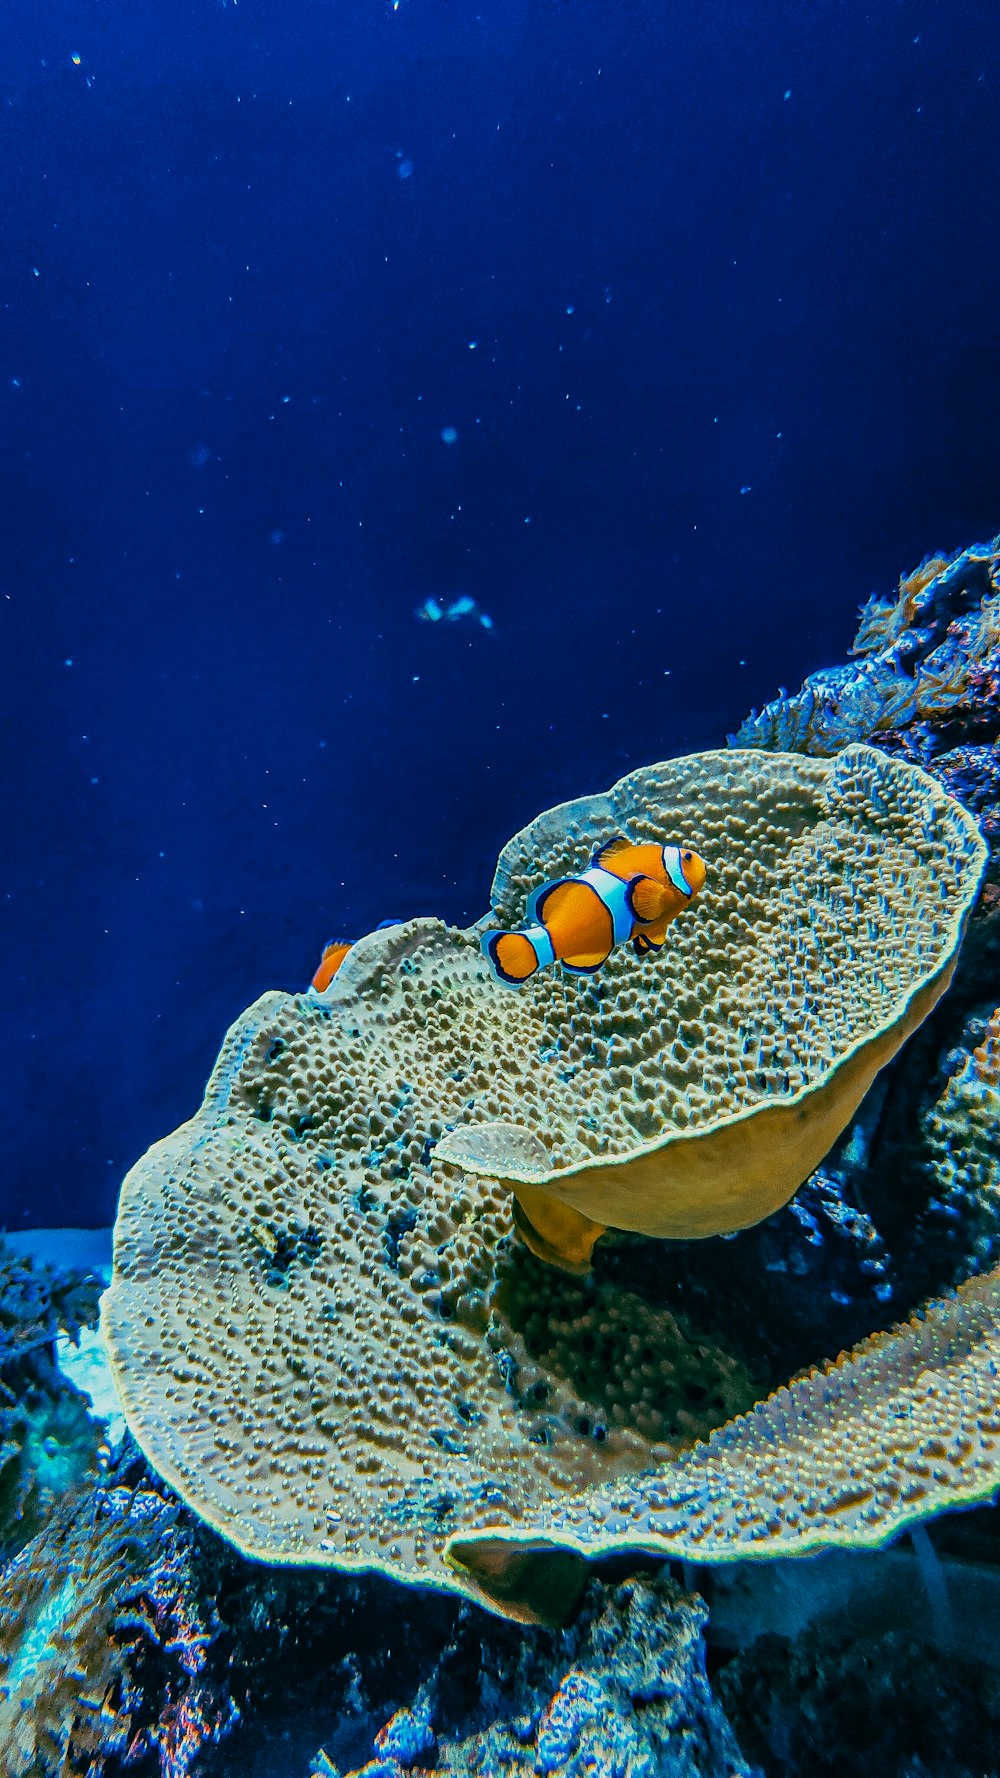 coral chevron desktop wallpaper